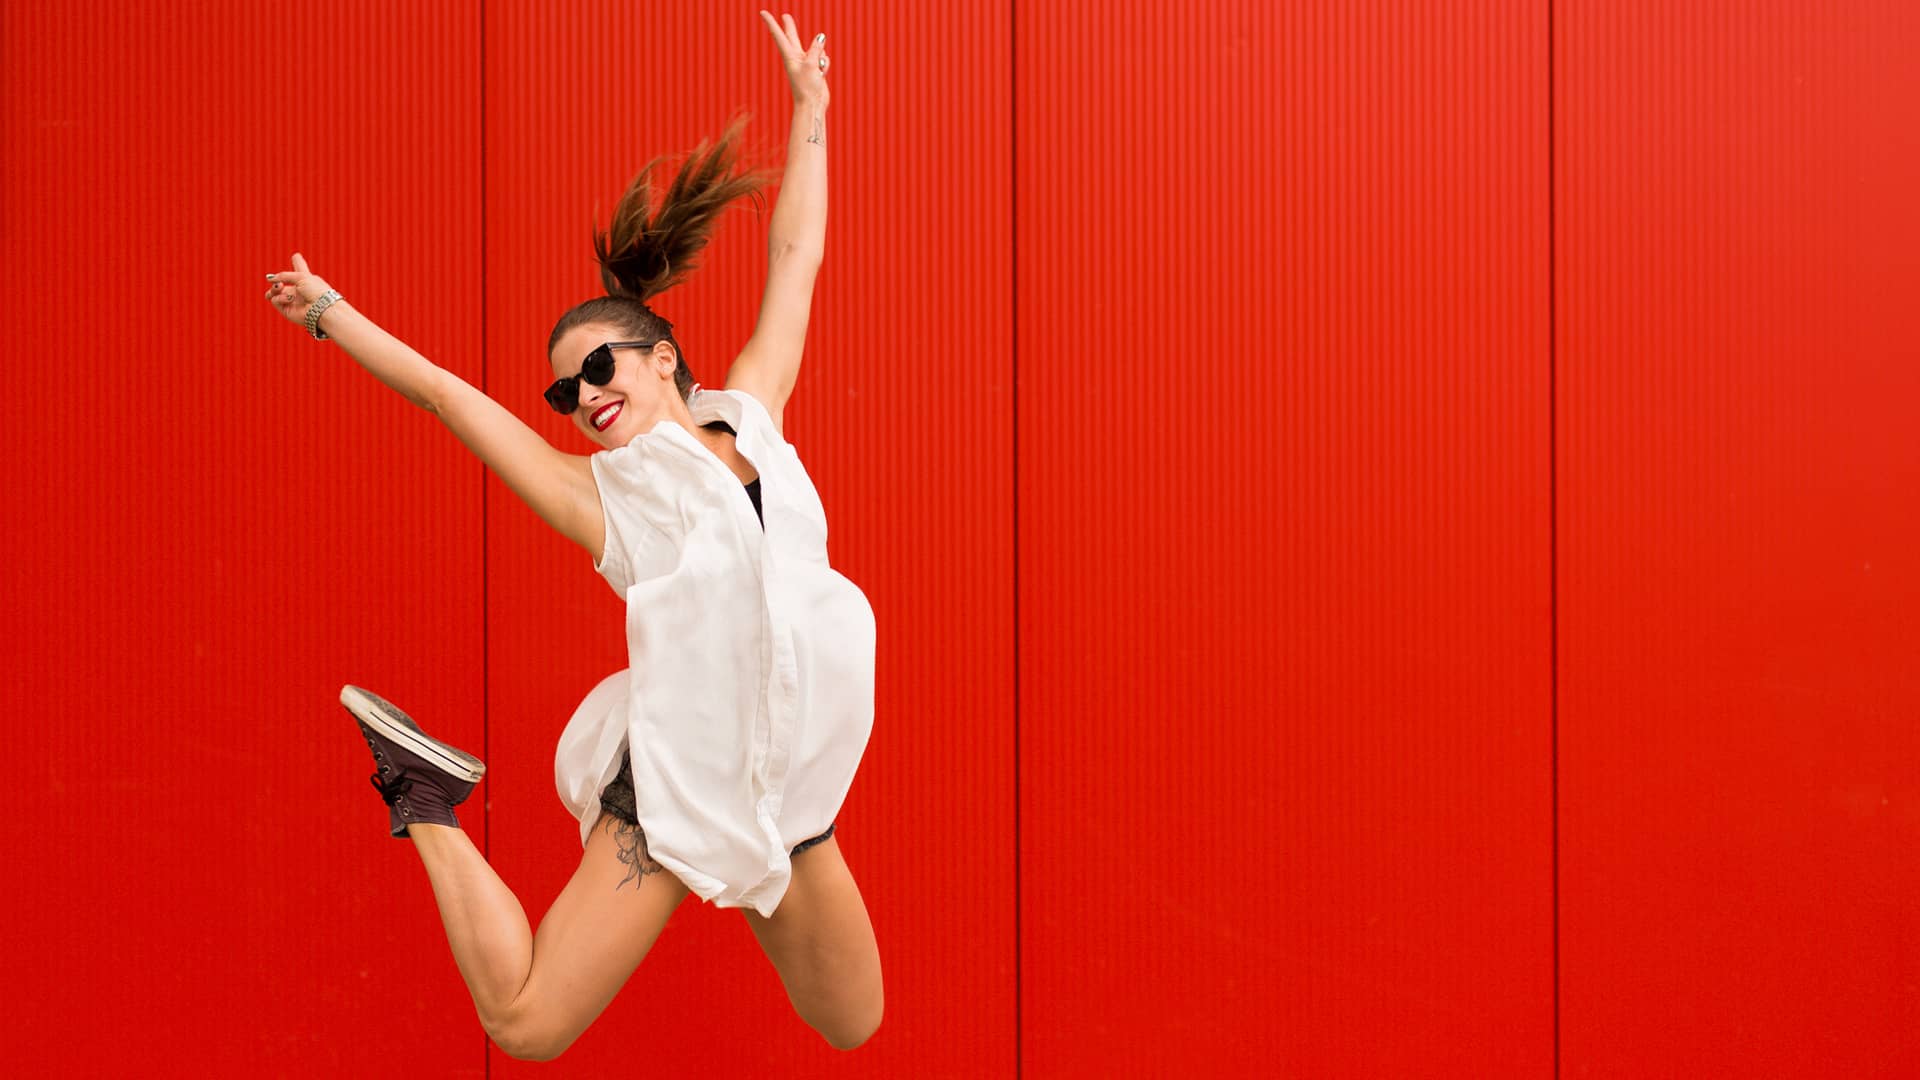 Mujer saltando representa amago de portabilidad de vodafone